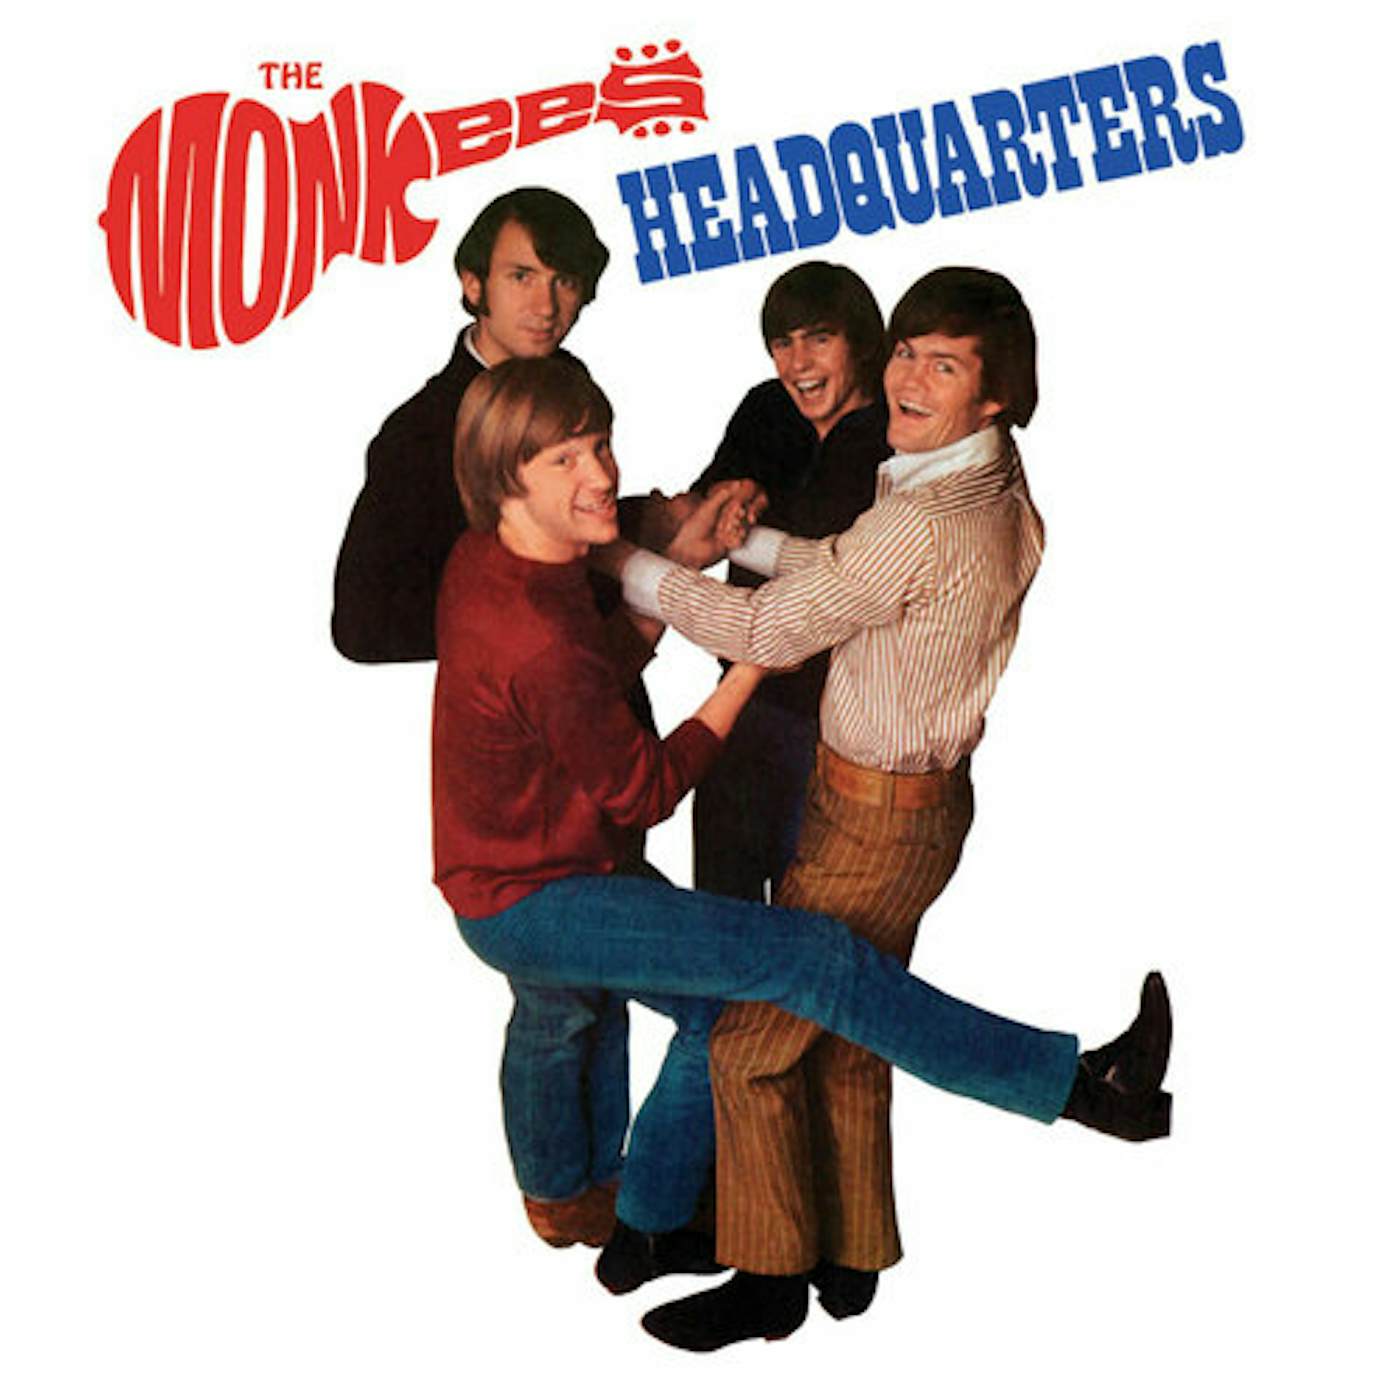 The Monkees Headquarters Vinyl Record